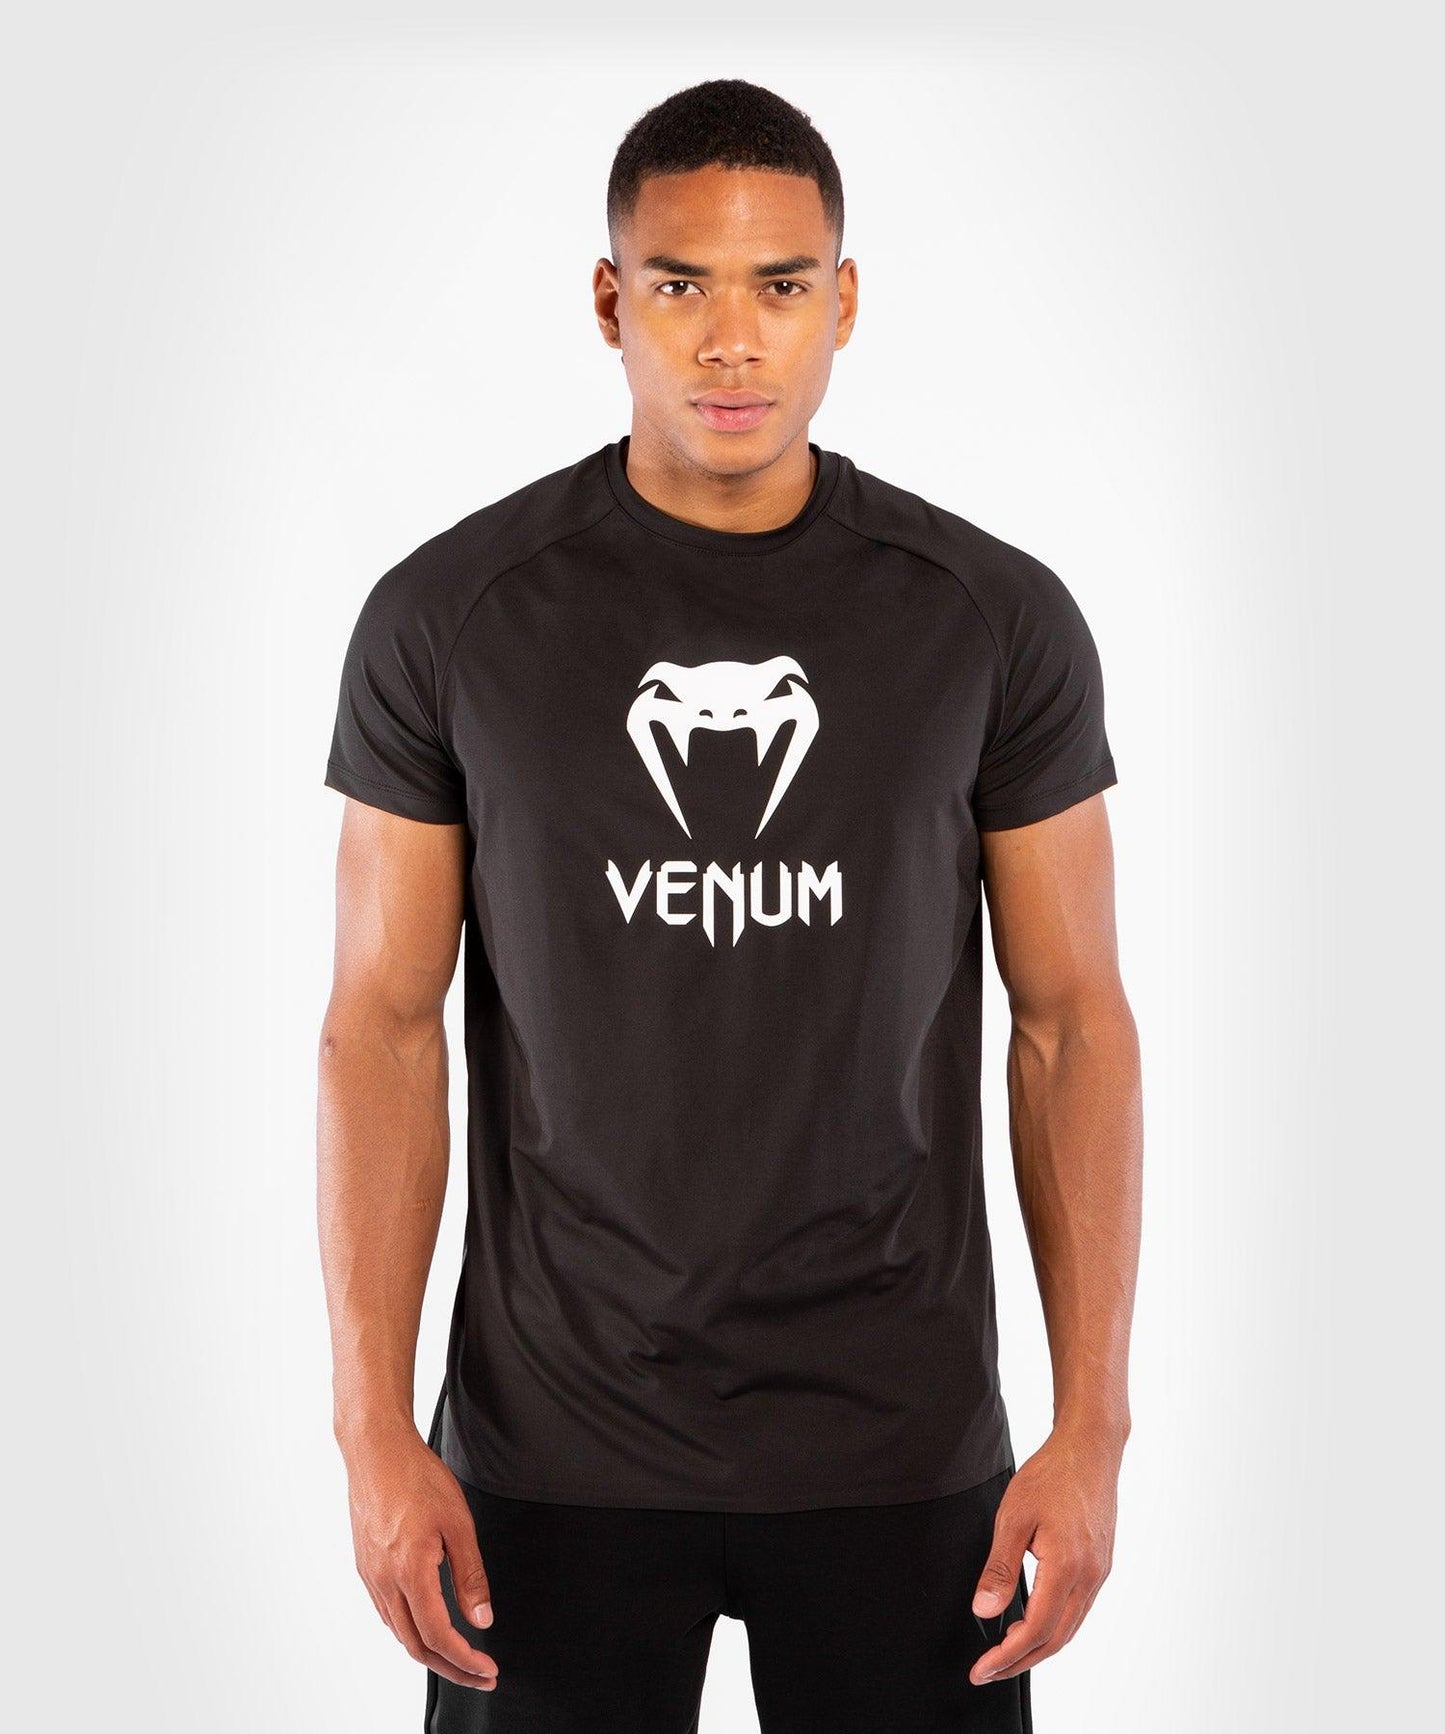 Venum Classic Dry Tech T-shirt - Black